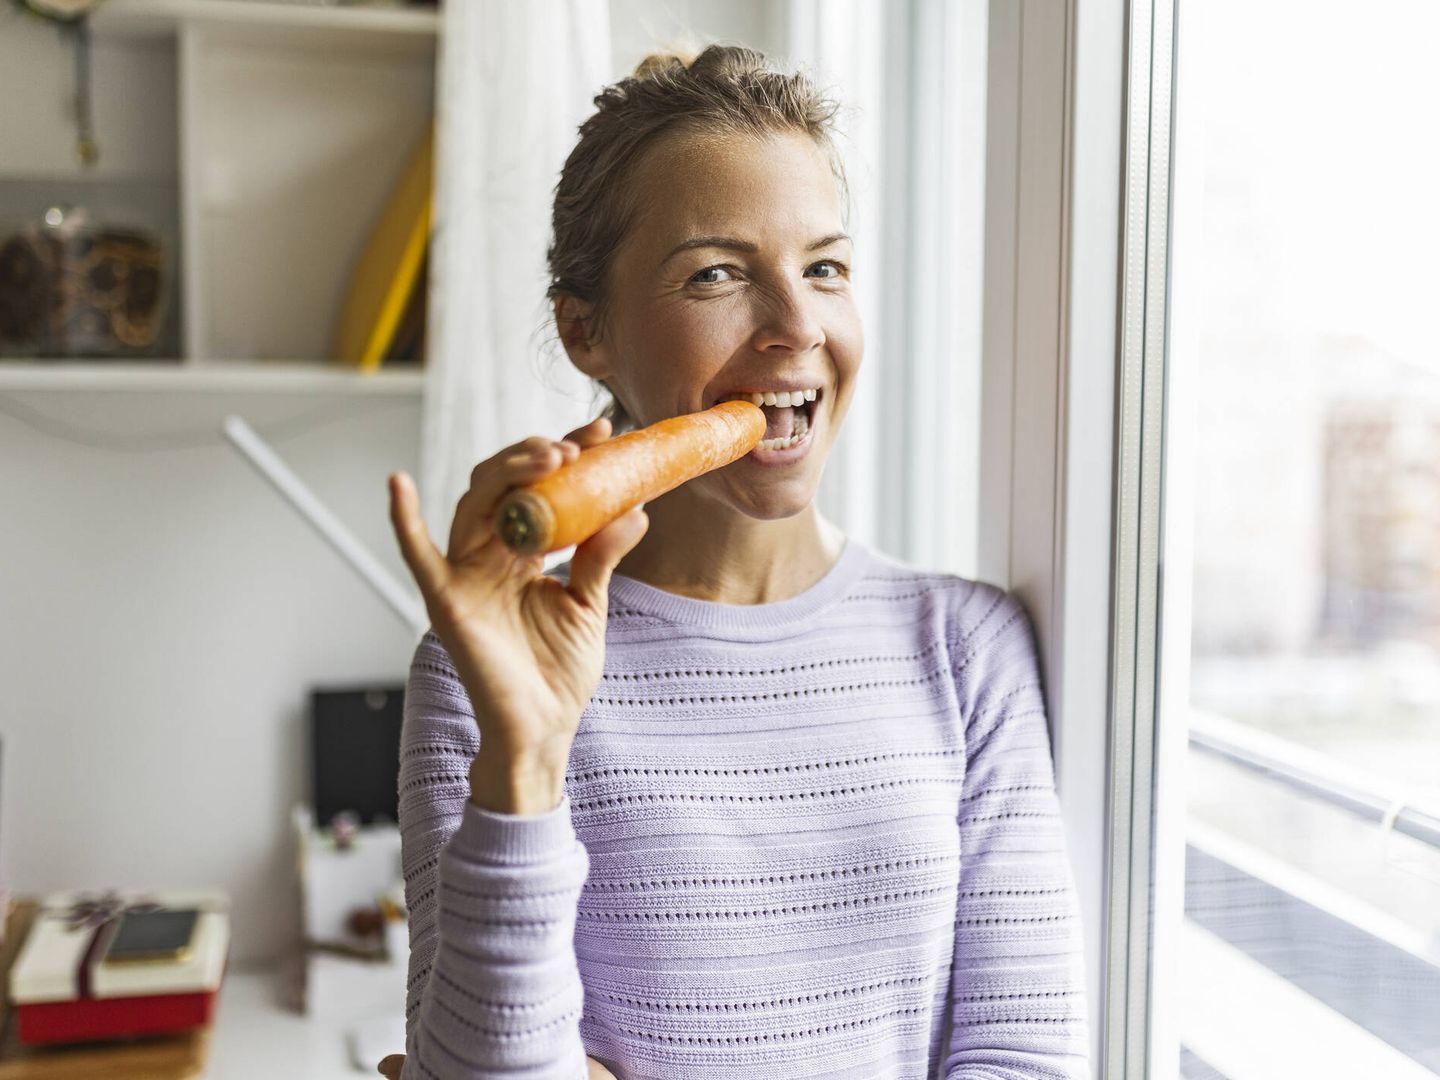 Hortalizas como las zanahorias ayudan a tener una buena salud visual. (iStock)